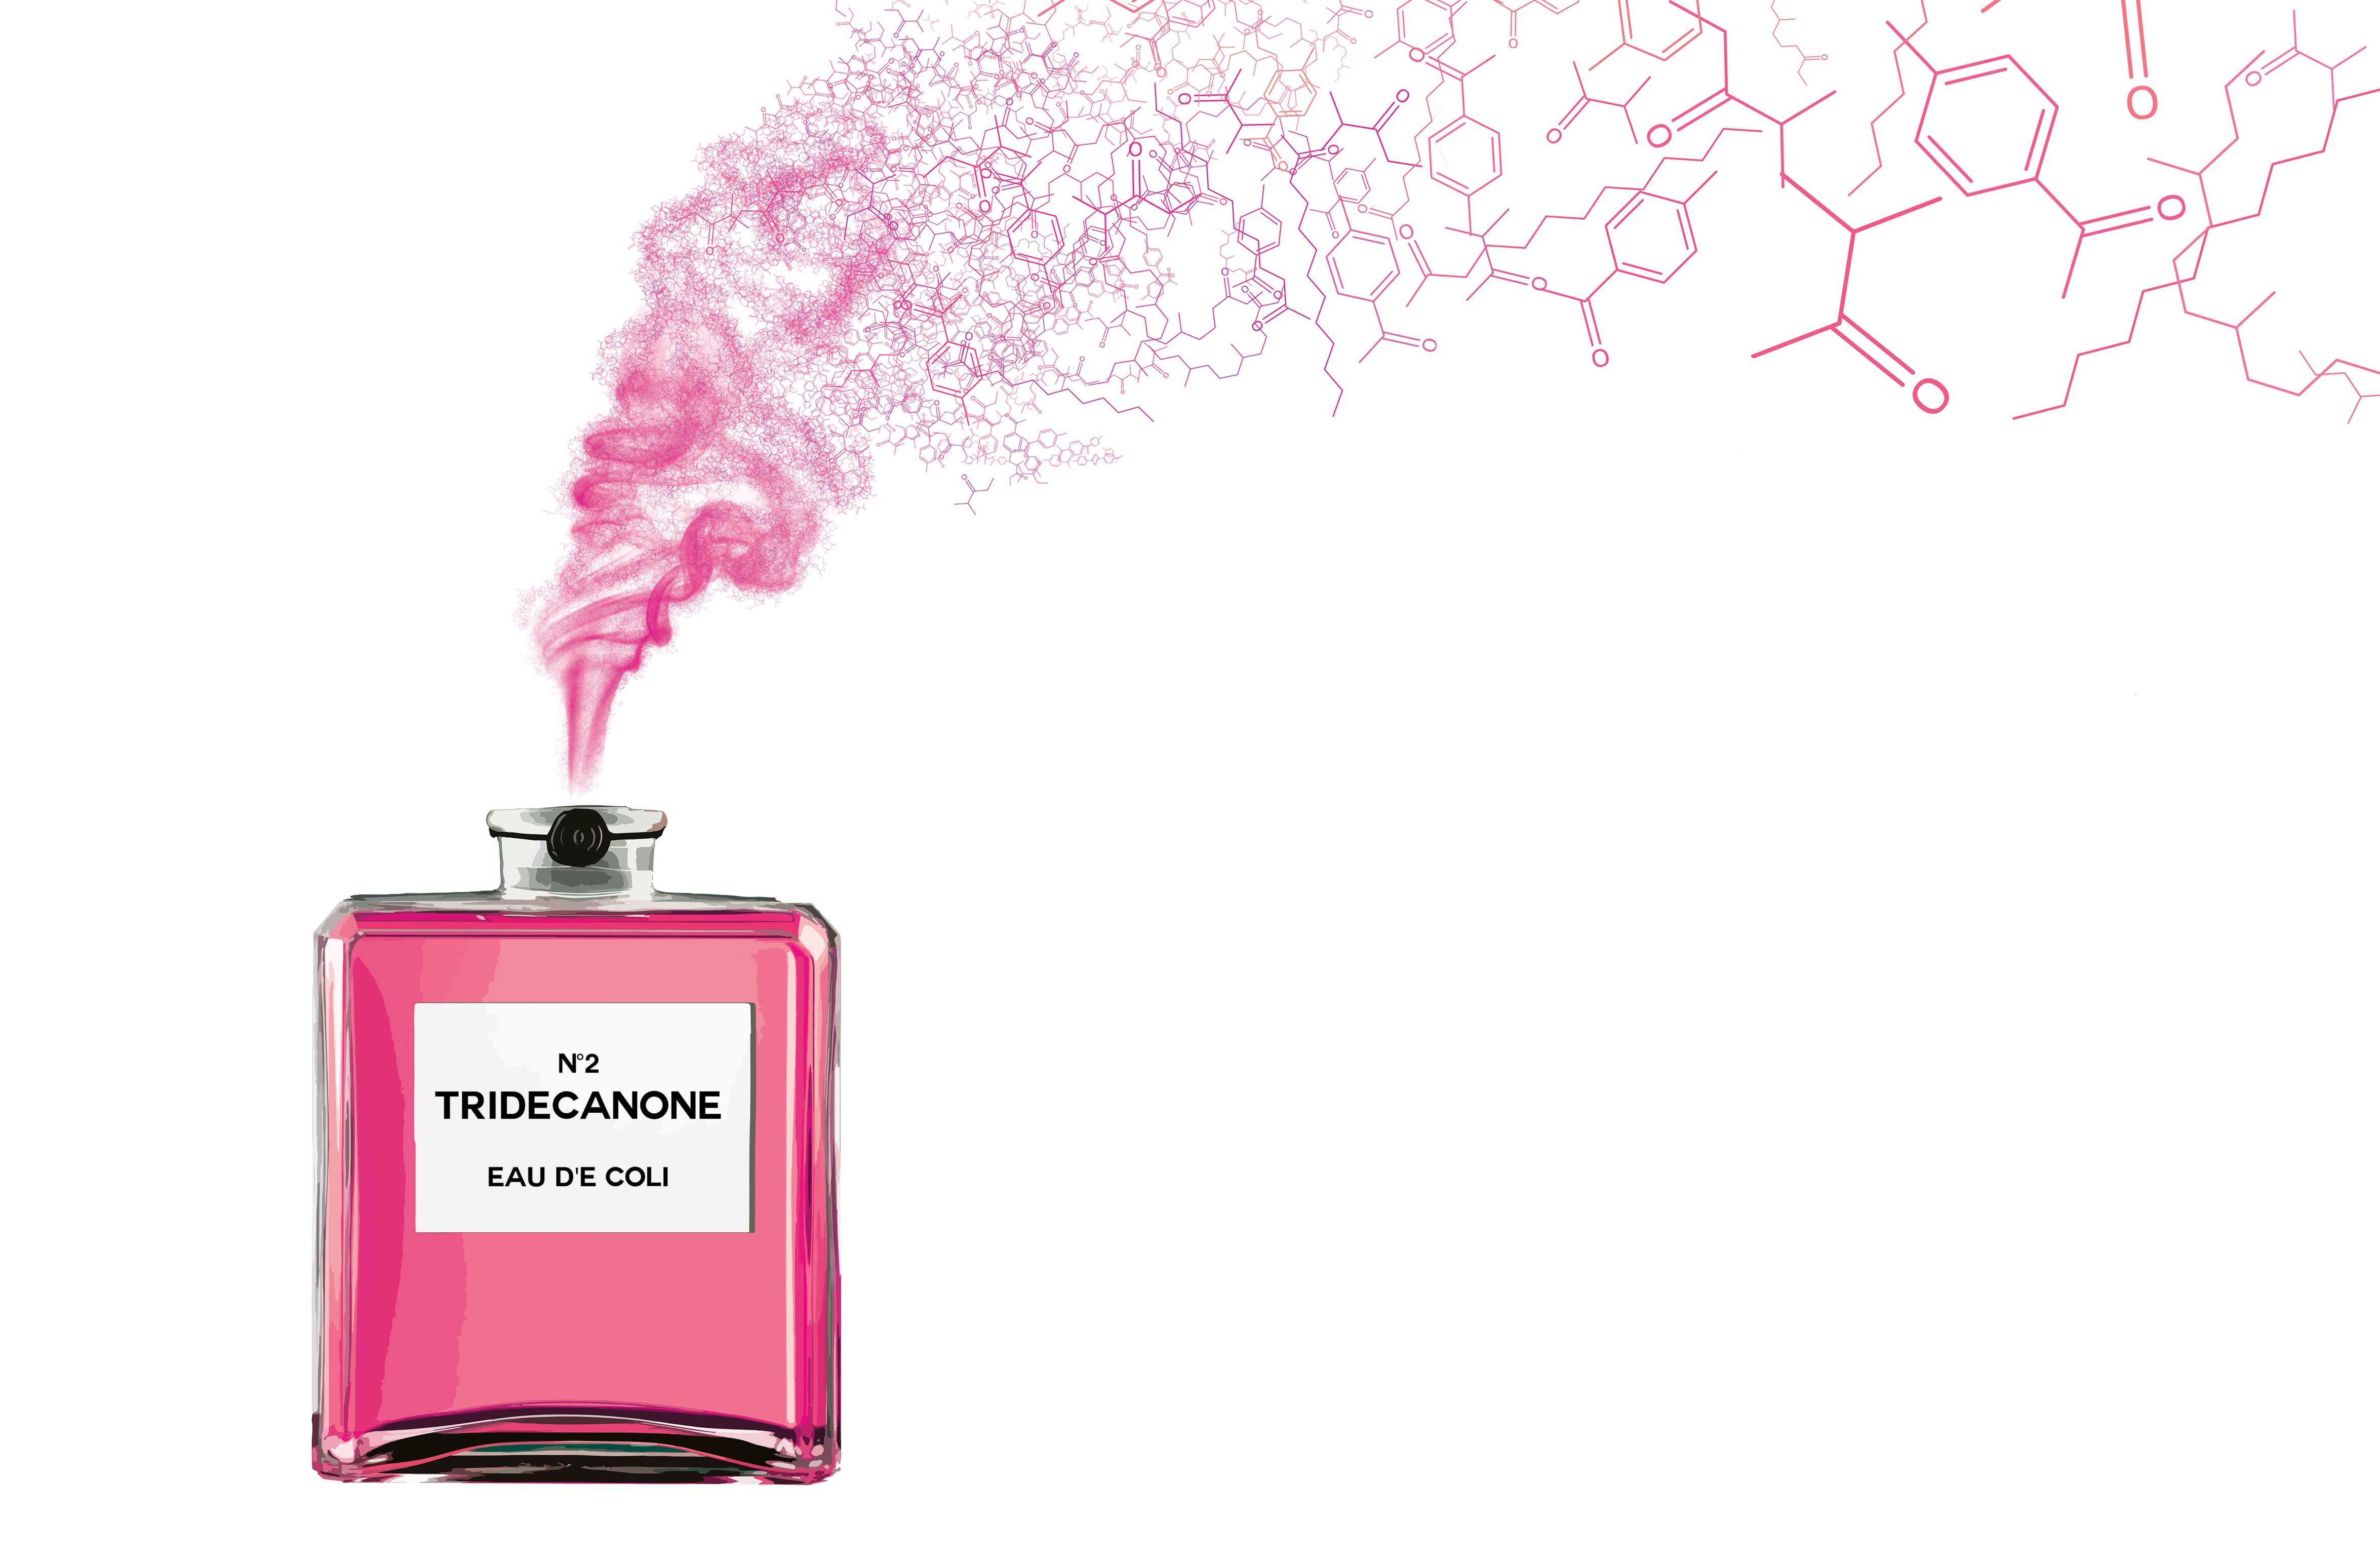 Химия в парфюмерии